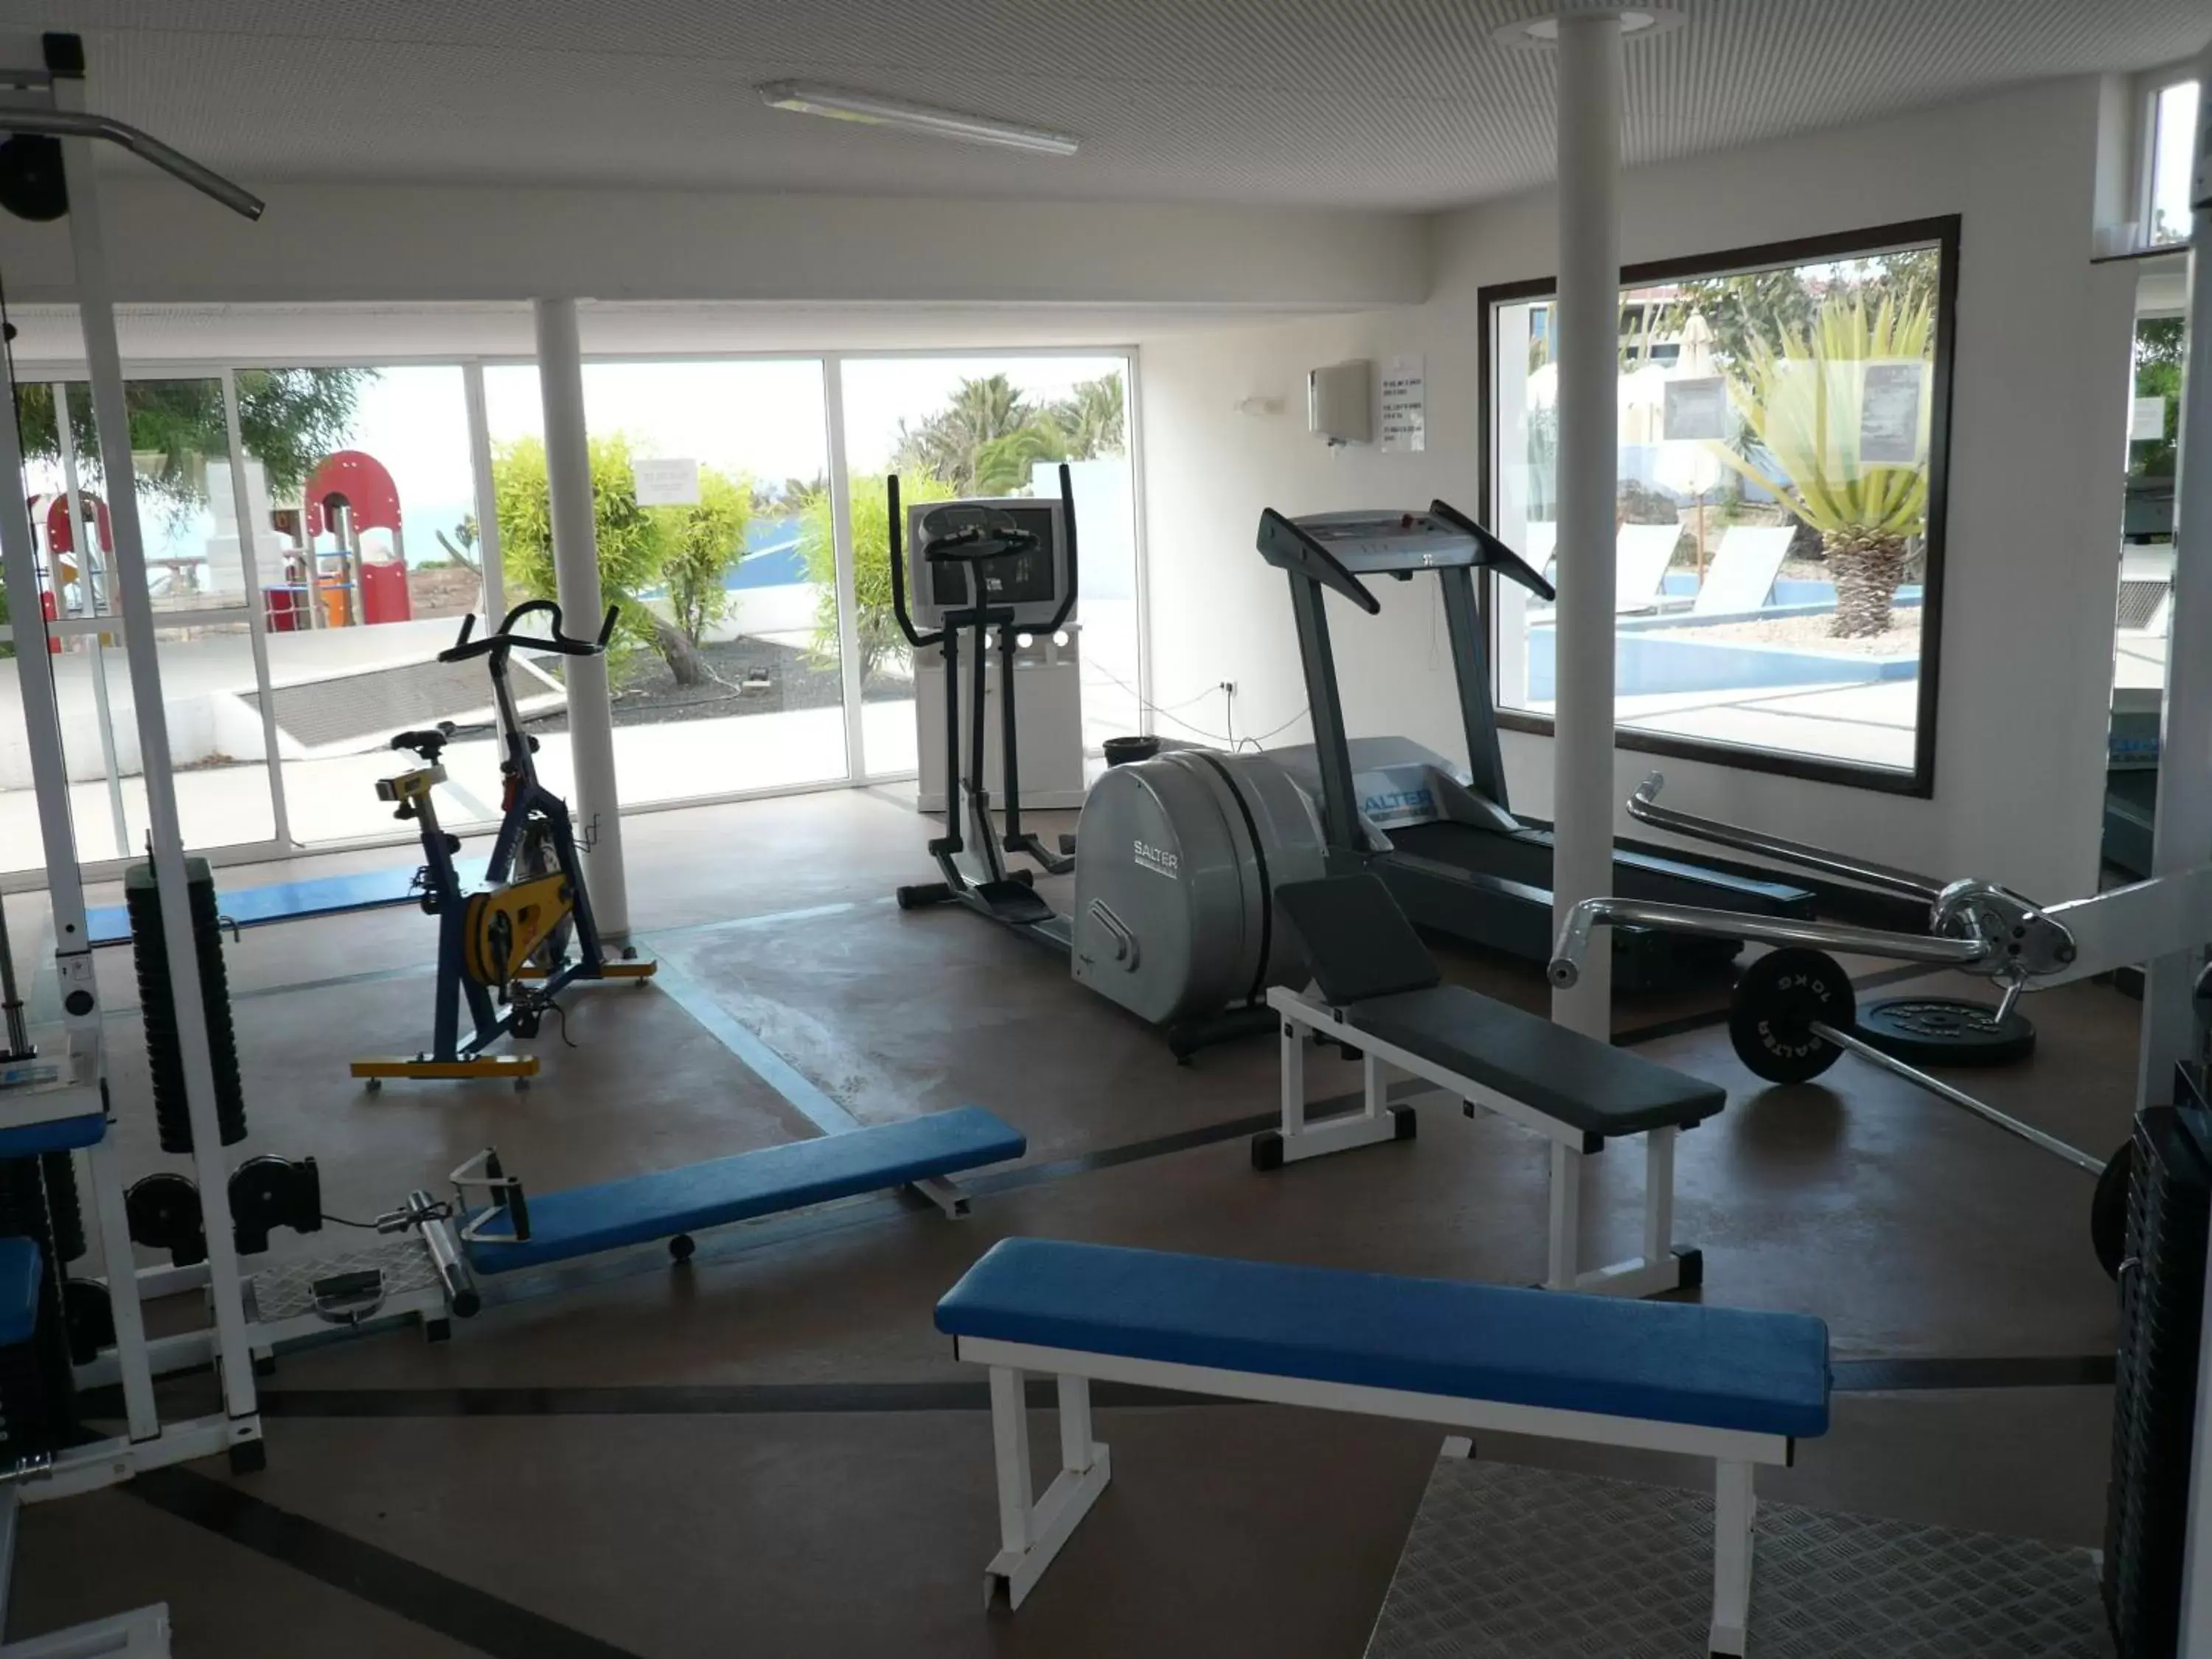 Fitness centre/facilities, Fitness Center/Facilities in Hotel LIVVO Risco del Gato Suites